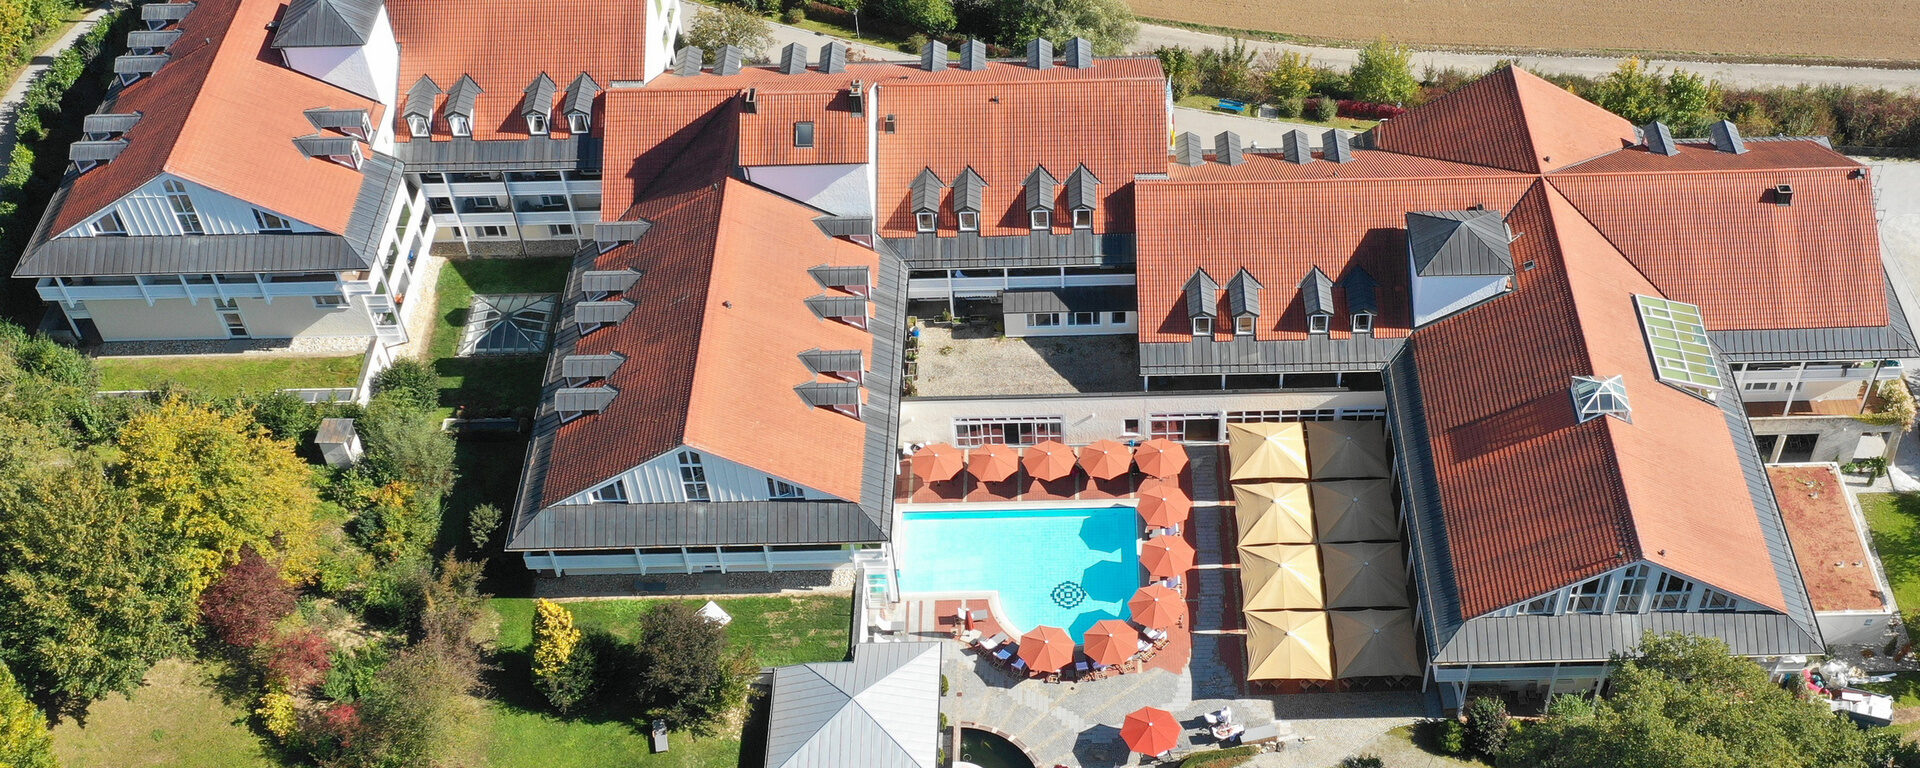 Klinik und Hotel St. Wolfgang in Bad Griesbach: Hier sehen Sie die Außenansicht unseres Hauses.